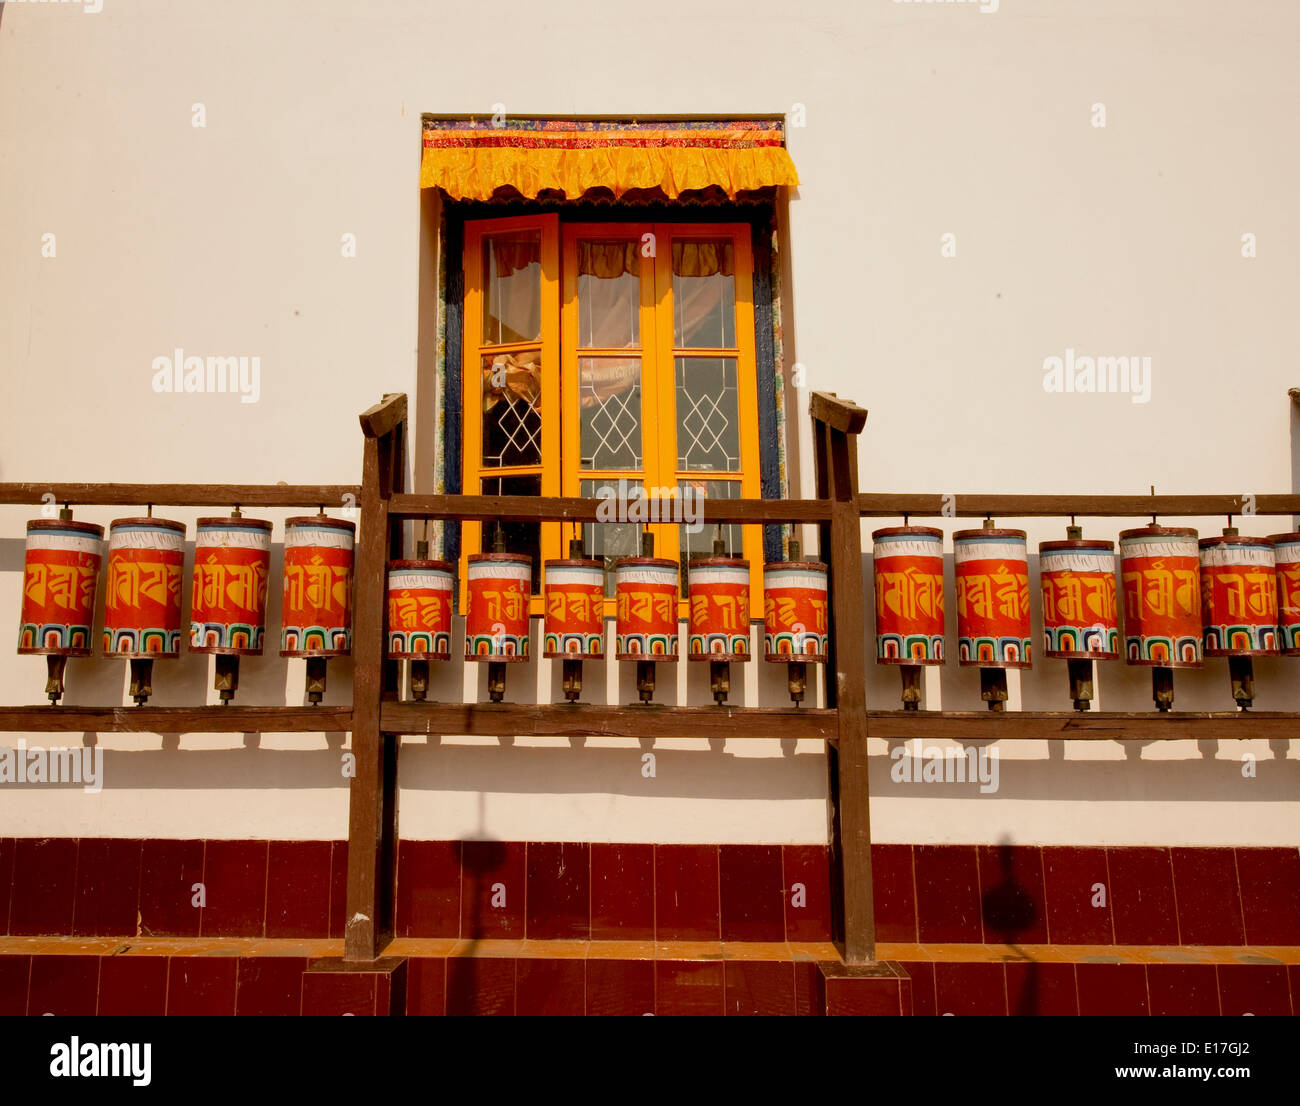 L'art dans l'architecture du monastère Bouddhiste - des roues de prière Banque D'Images